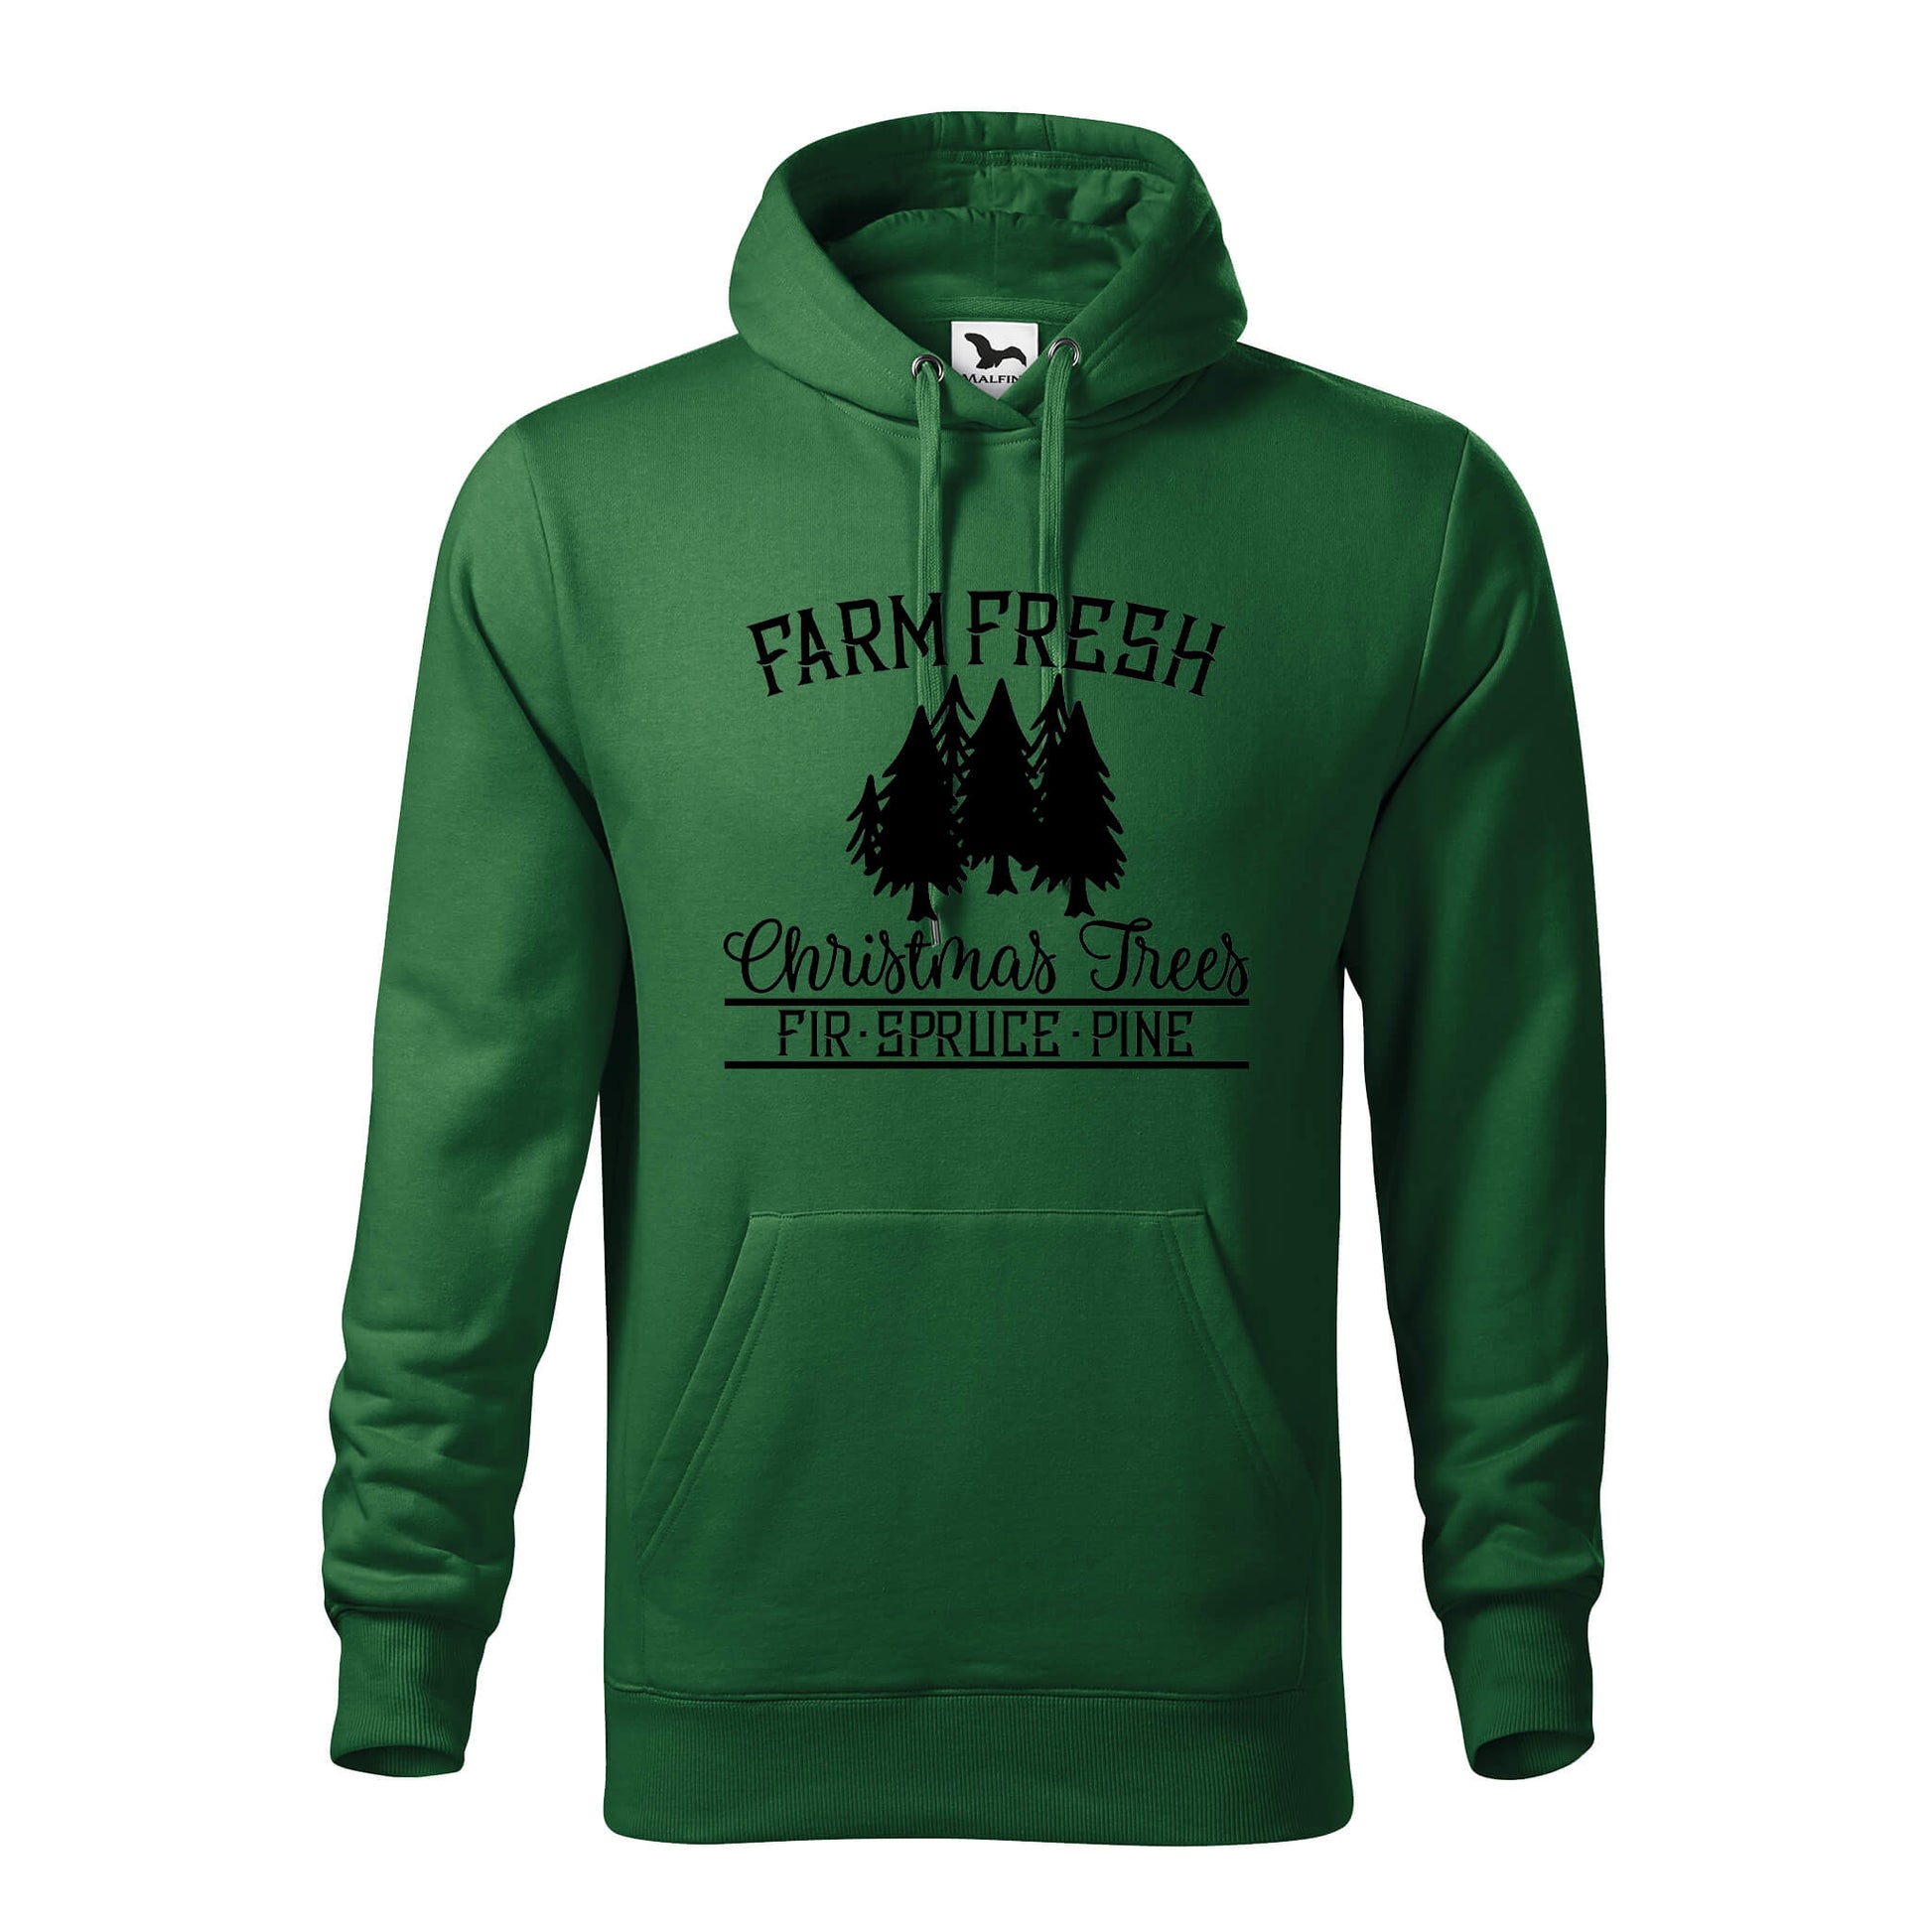 Farm fresh christmas trees hoodie - rvdesignprint